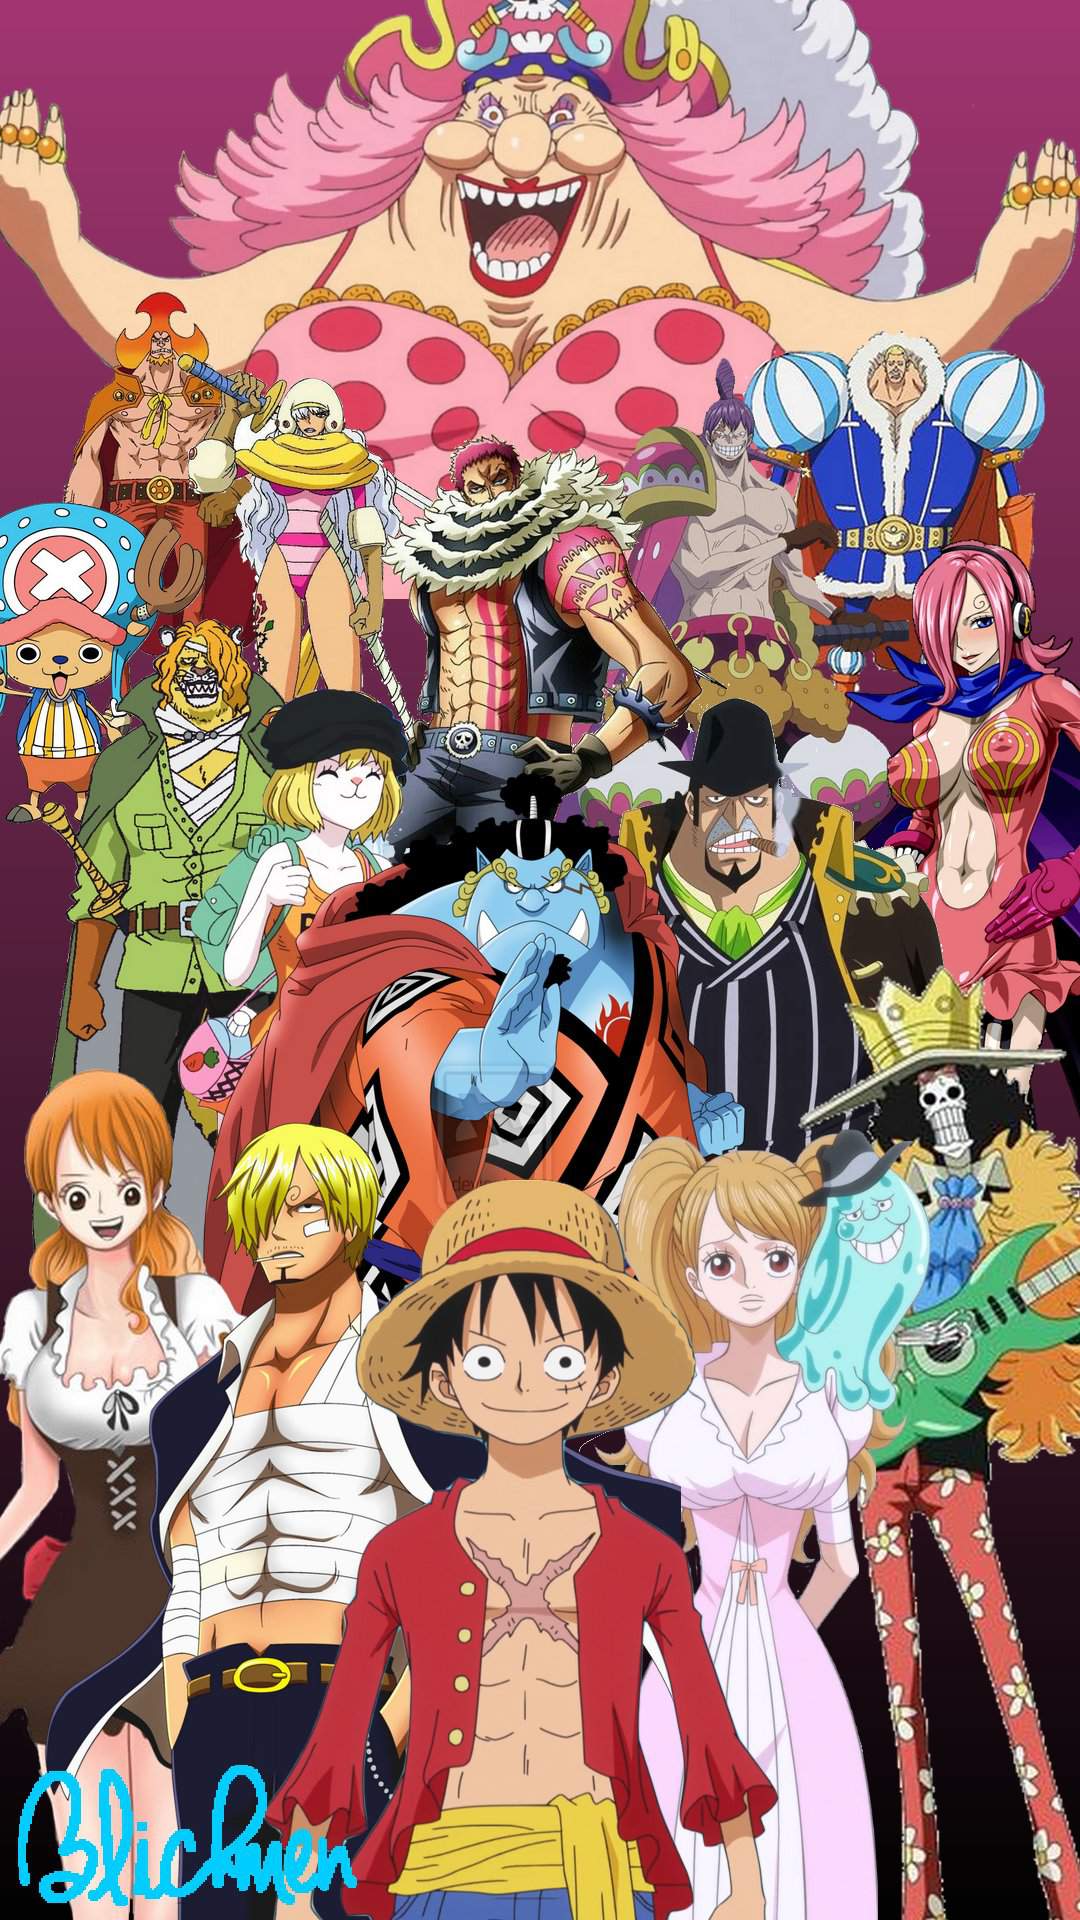 Fond d'écrans Arc Whole Cake Island ( fait par moi ) | One Piece [FR] Amino